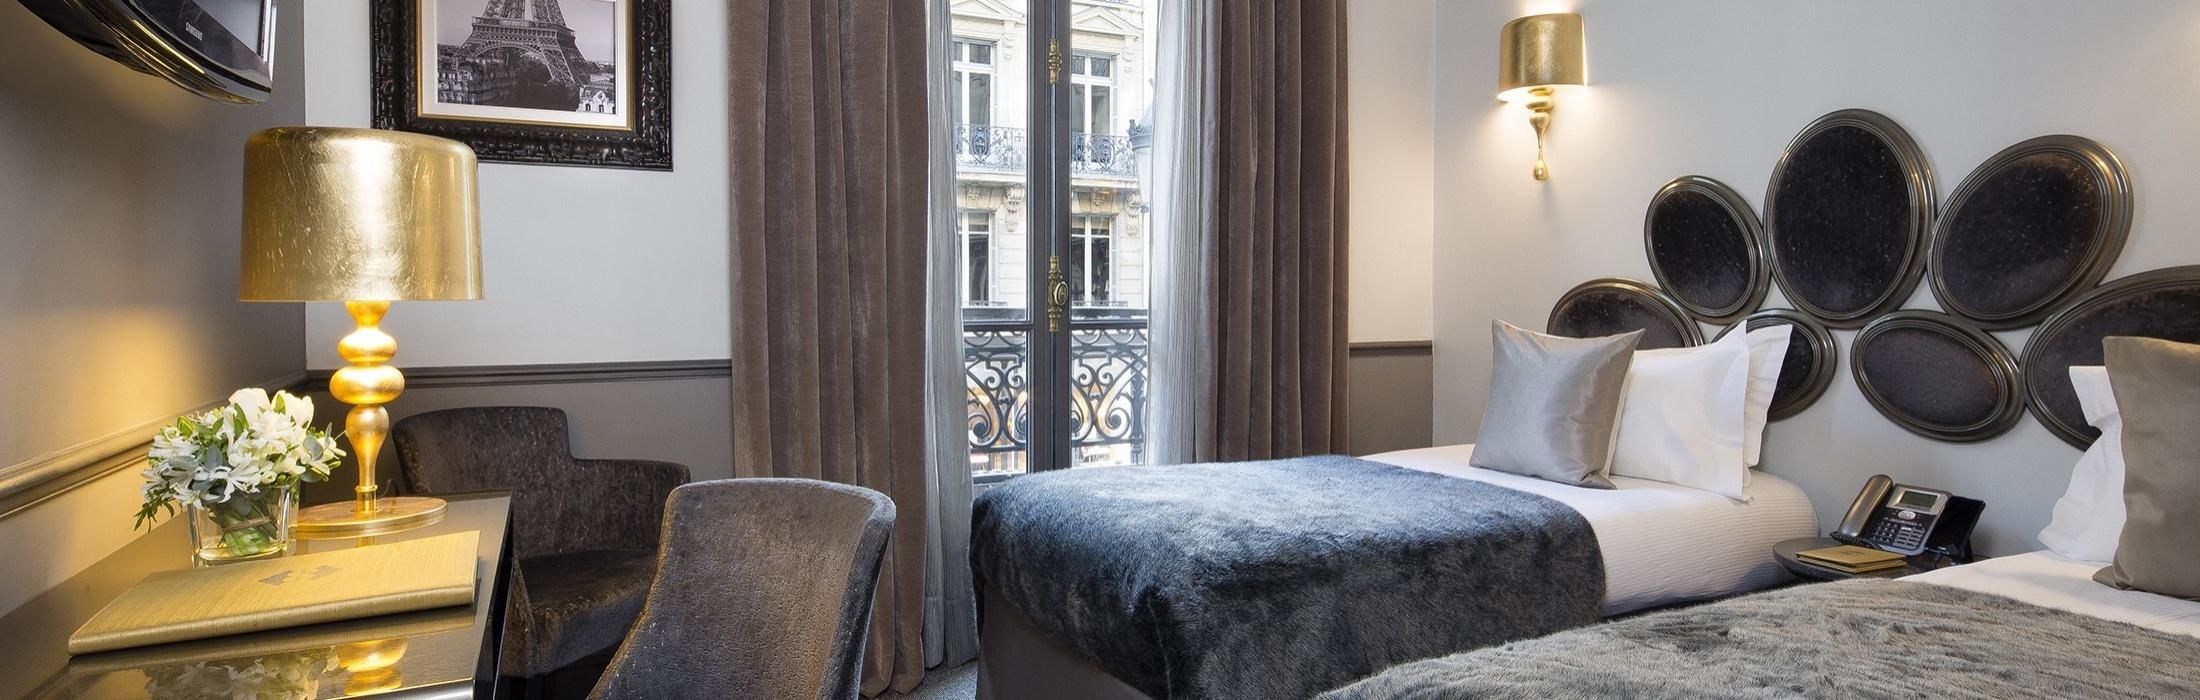 Hotel Lumen Paris Louvre - Chambre classique